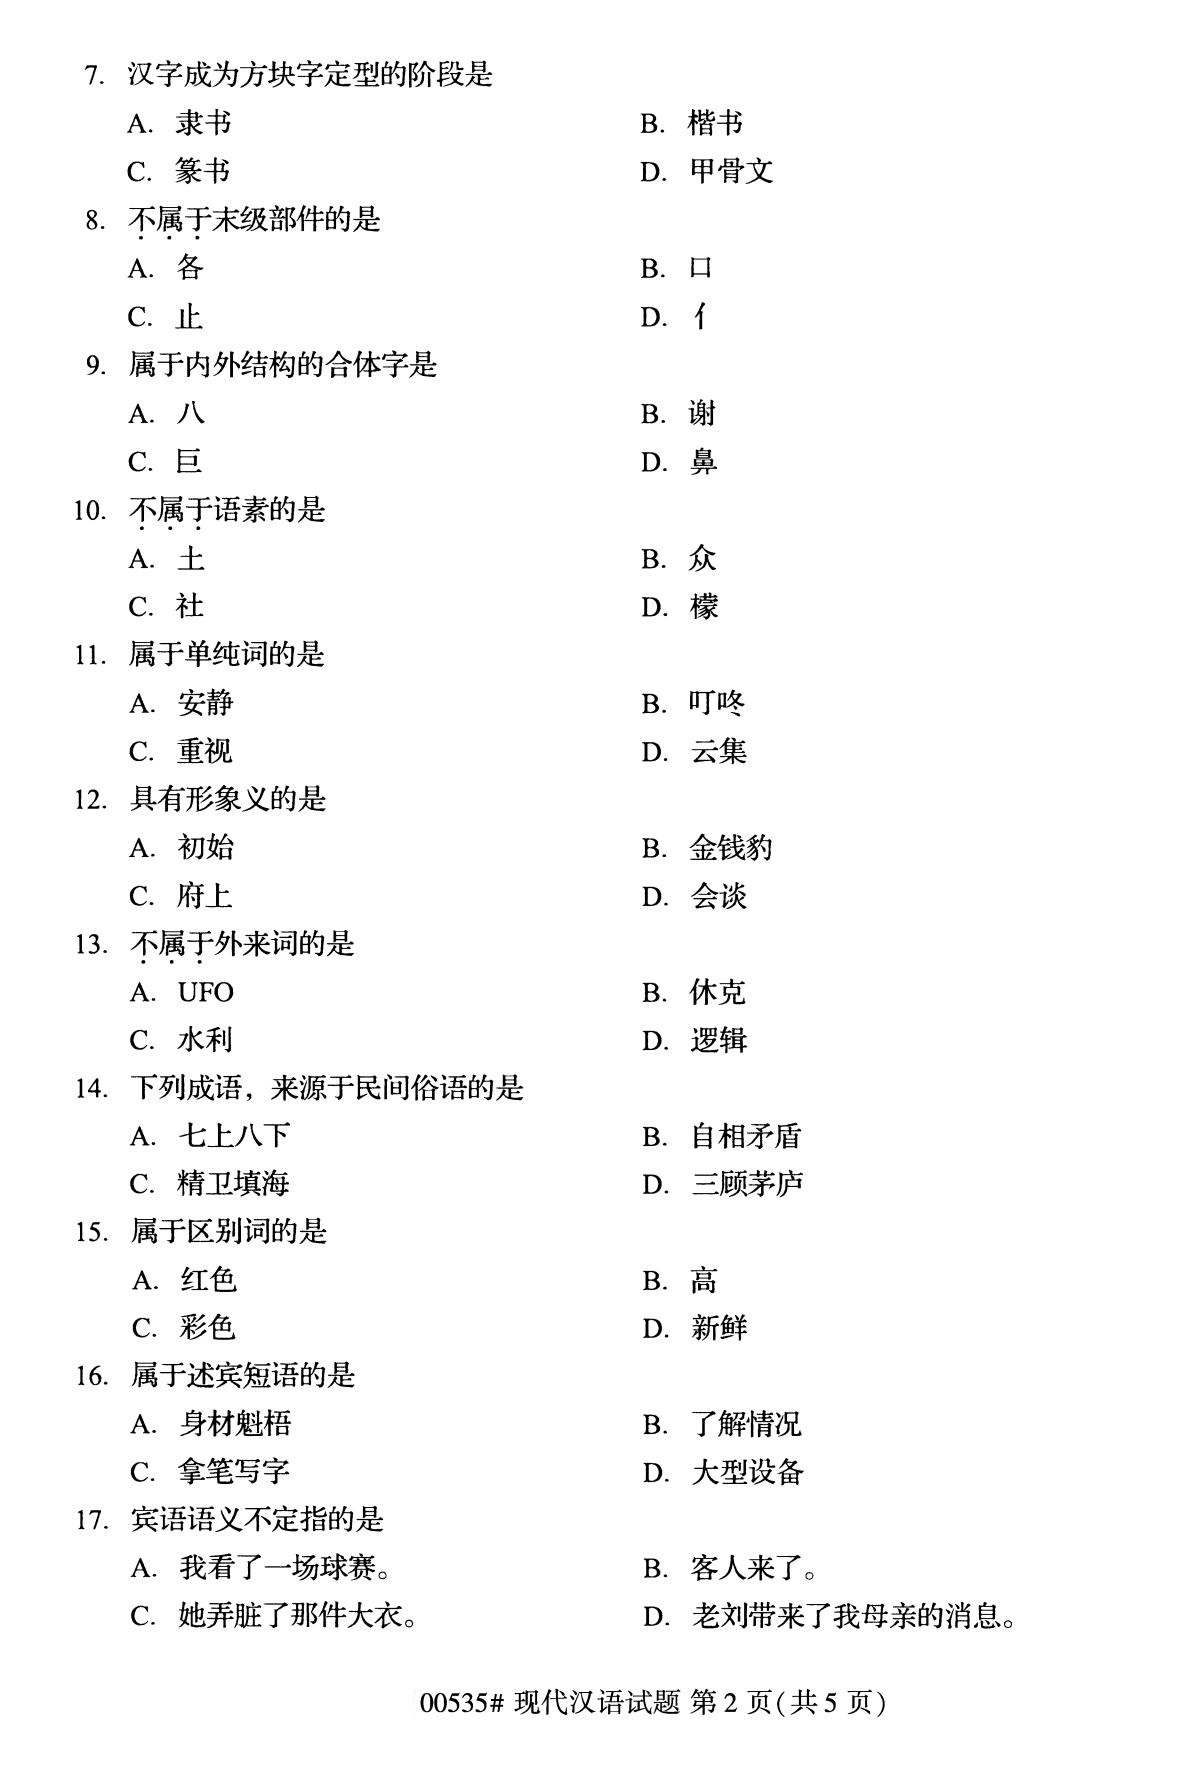 全国2020年10月自学考试00535现代汉语试题